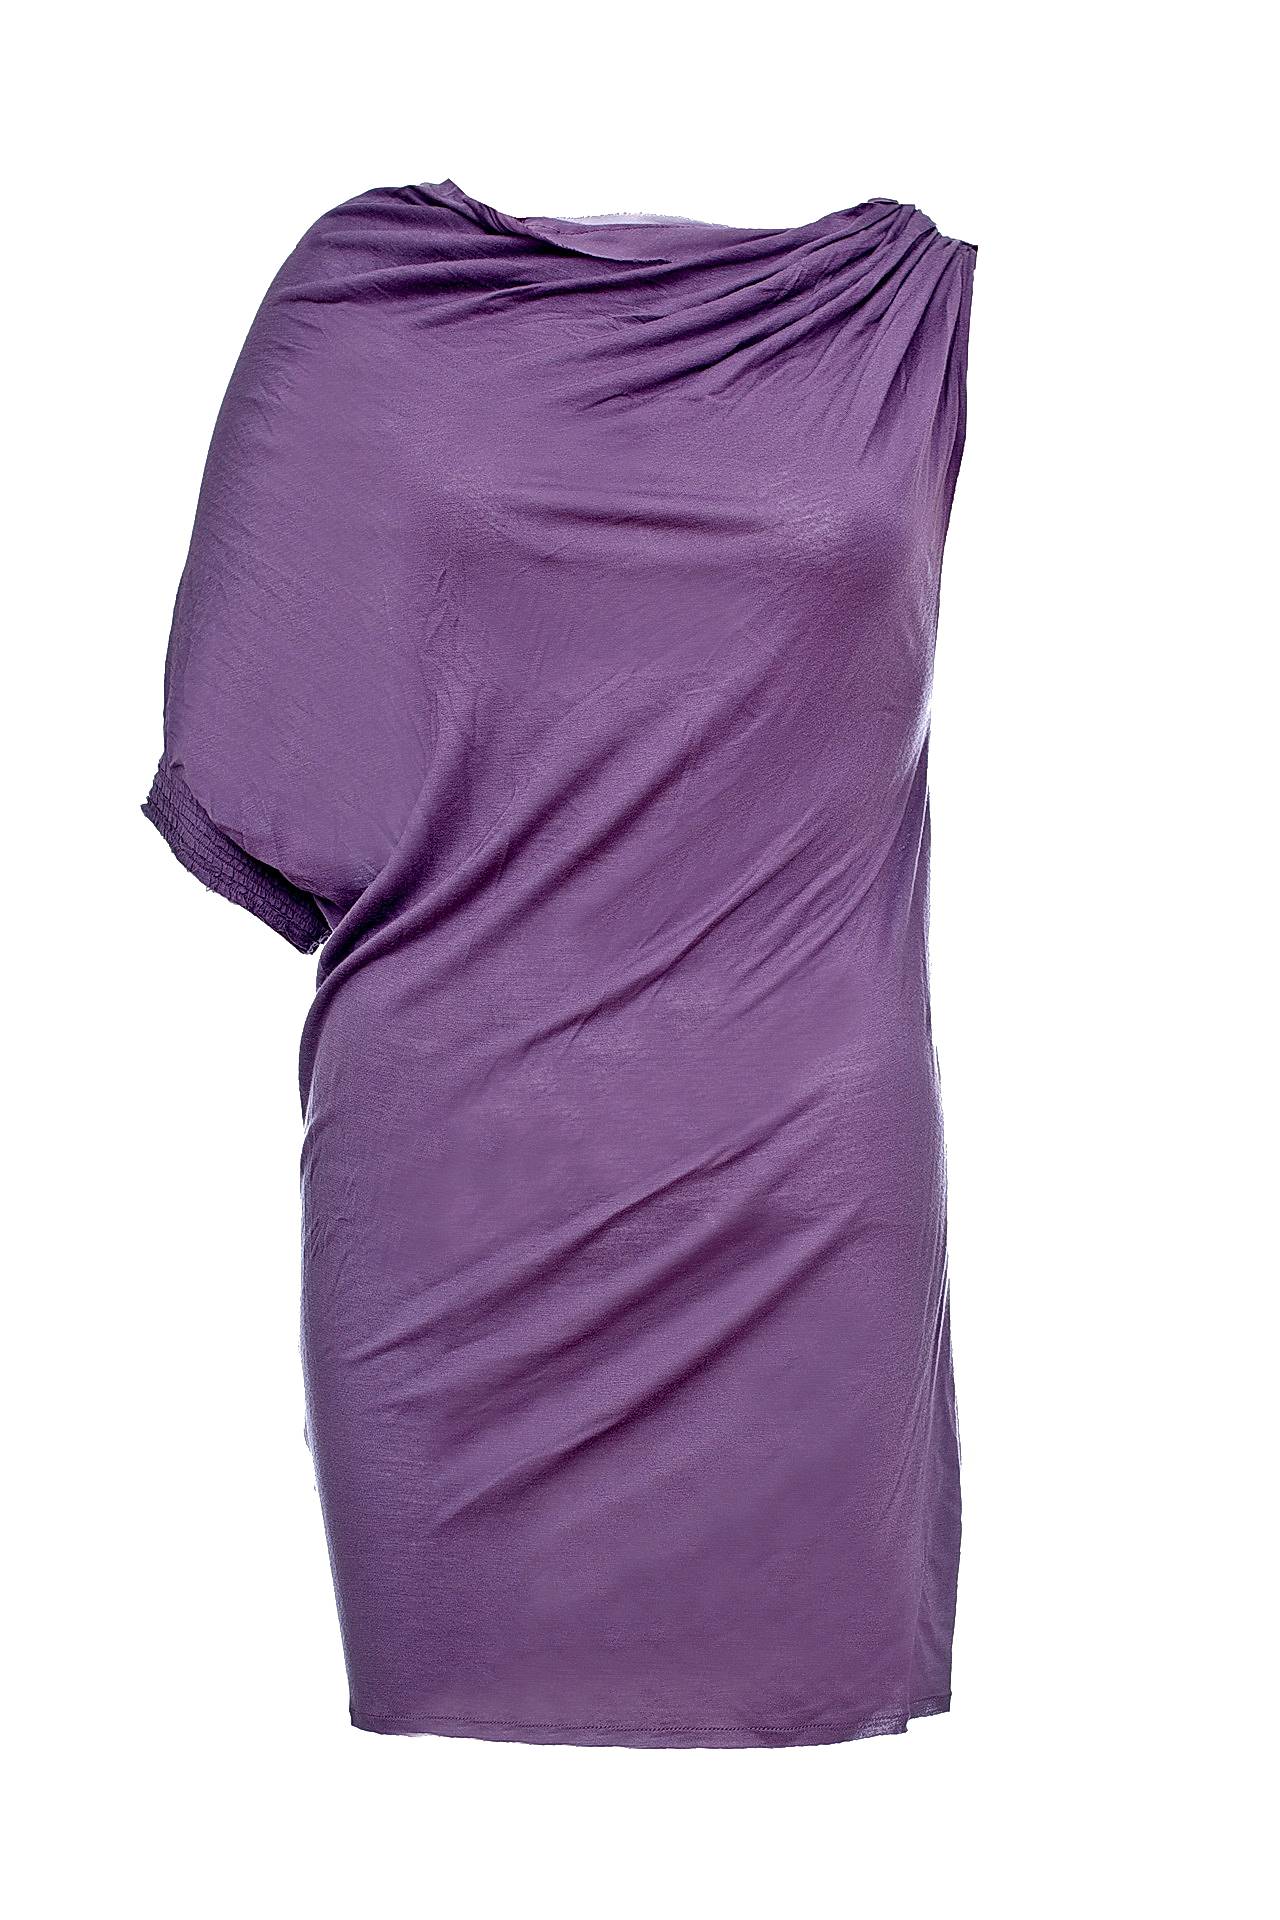 Одежда женская Топ LANVIN (W0013ATS02P5A/11.1). Купить за 16950 руб.